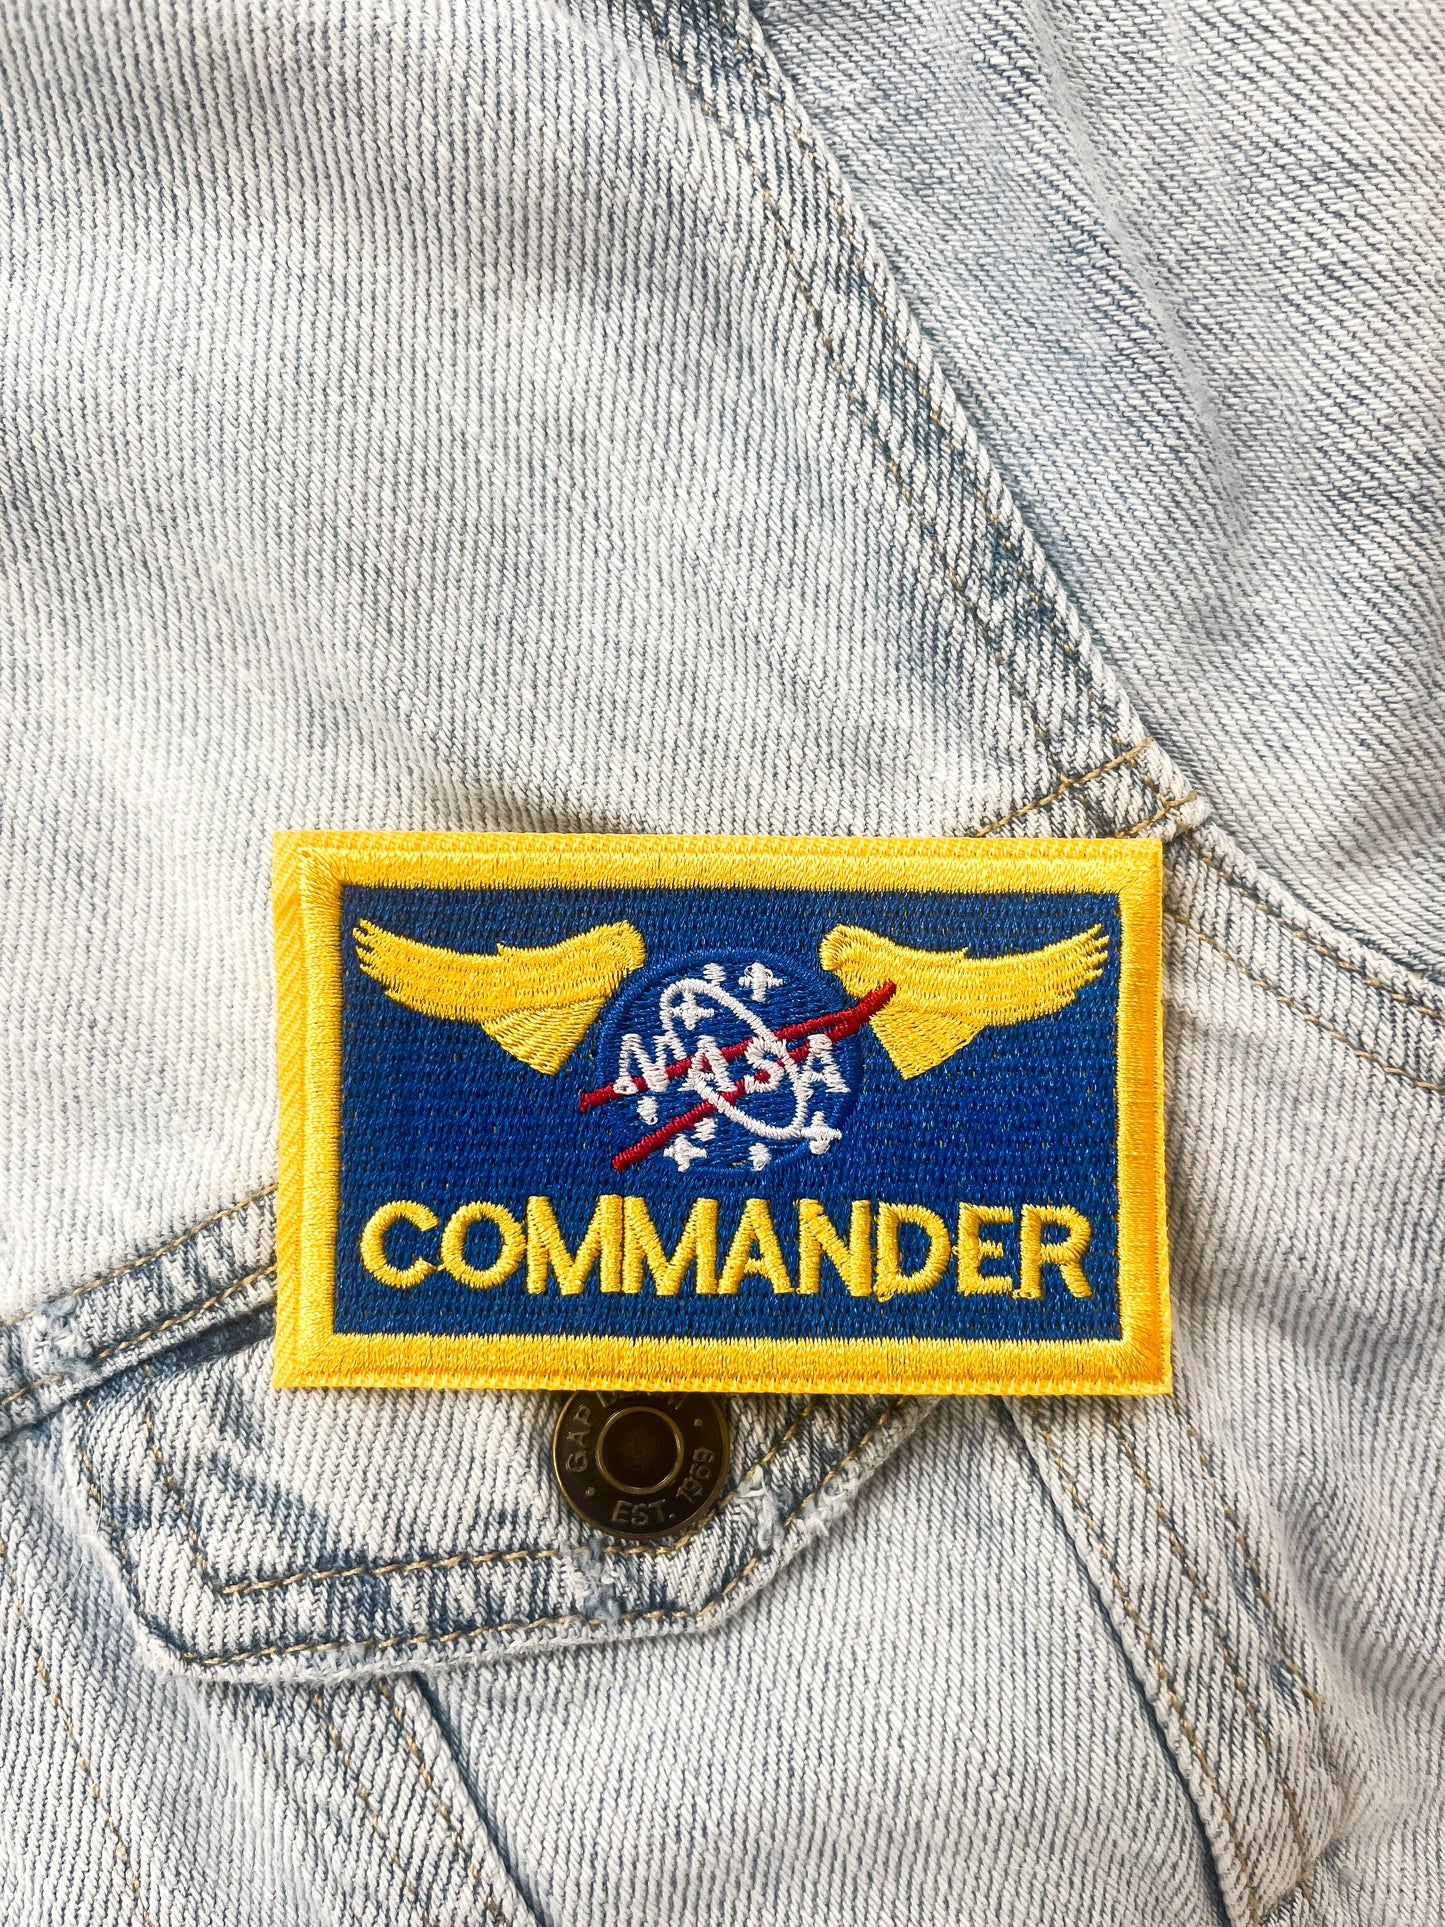 Commander patch